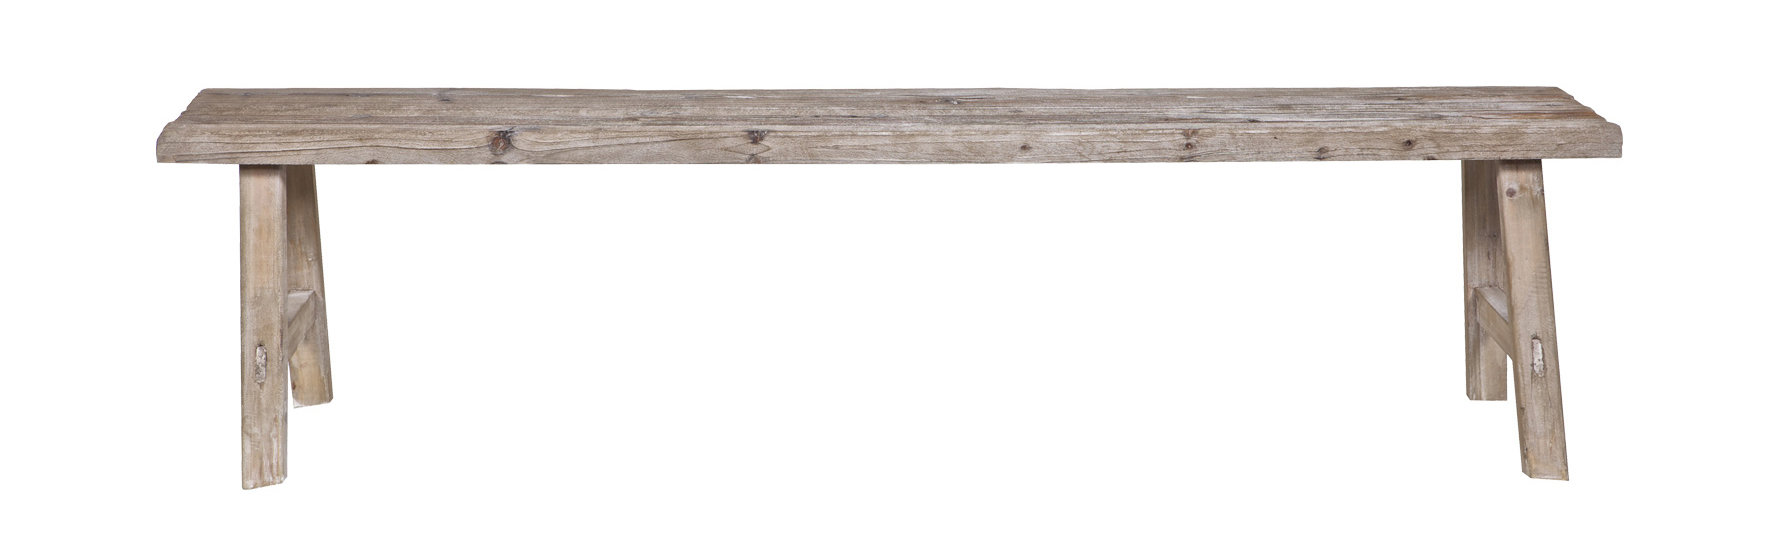 BasicLabel Eettafelbank van steigerhouten planken, helemaal hip en heel handig om aan de eettafel binnen of buiten te zetten.